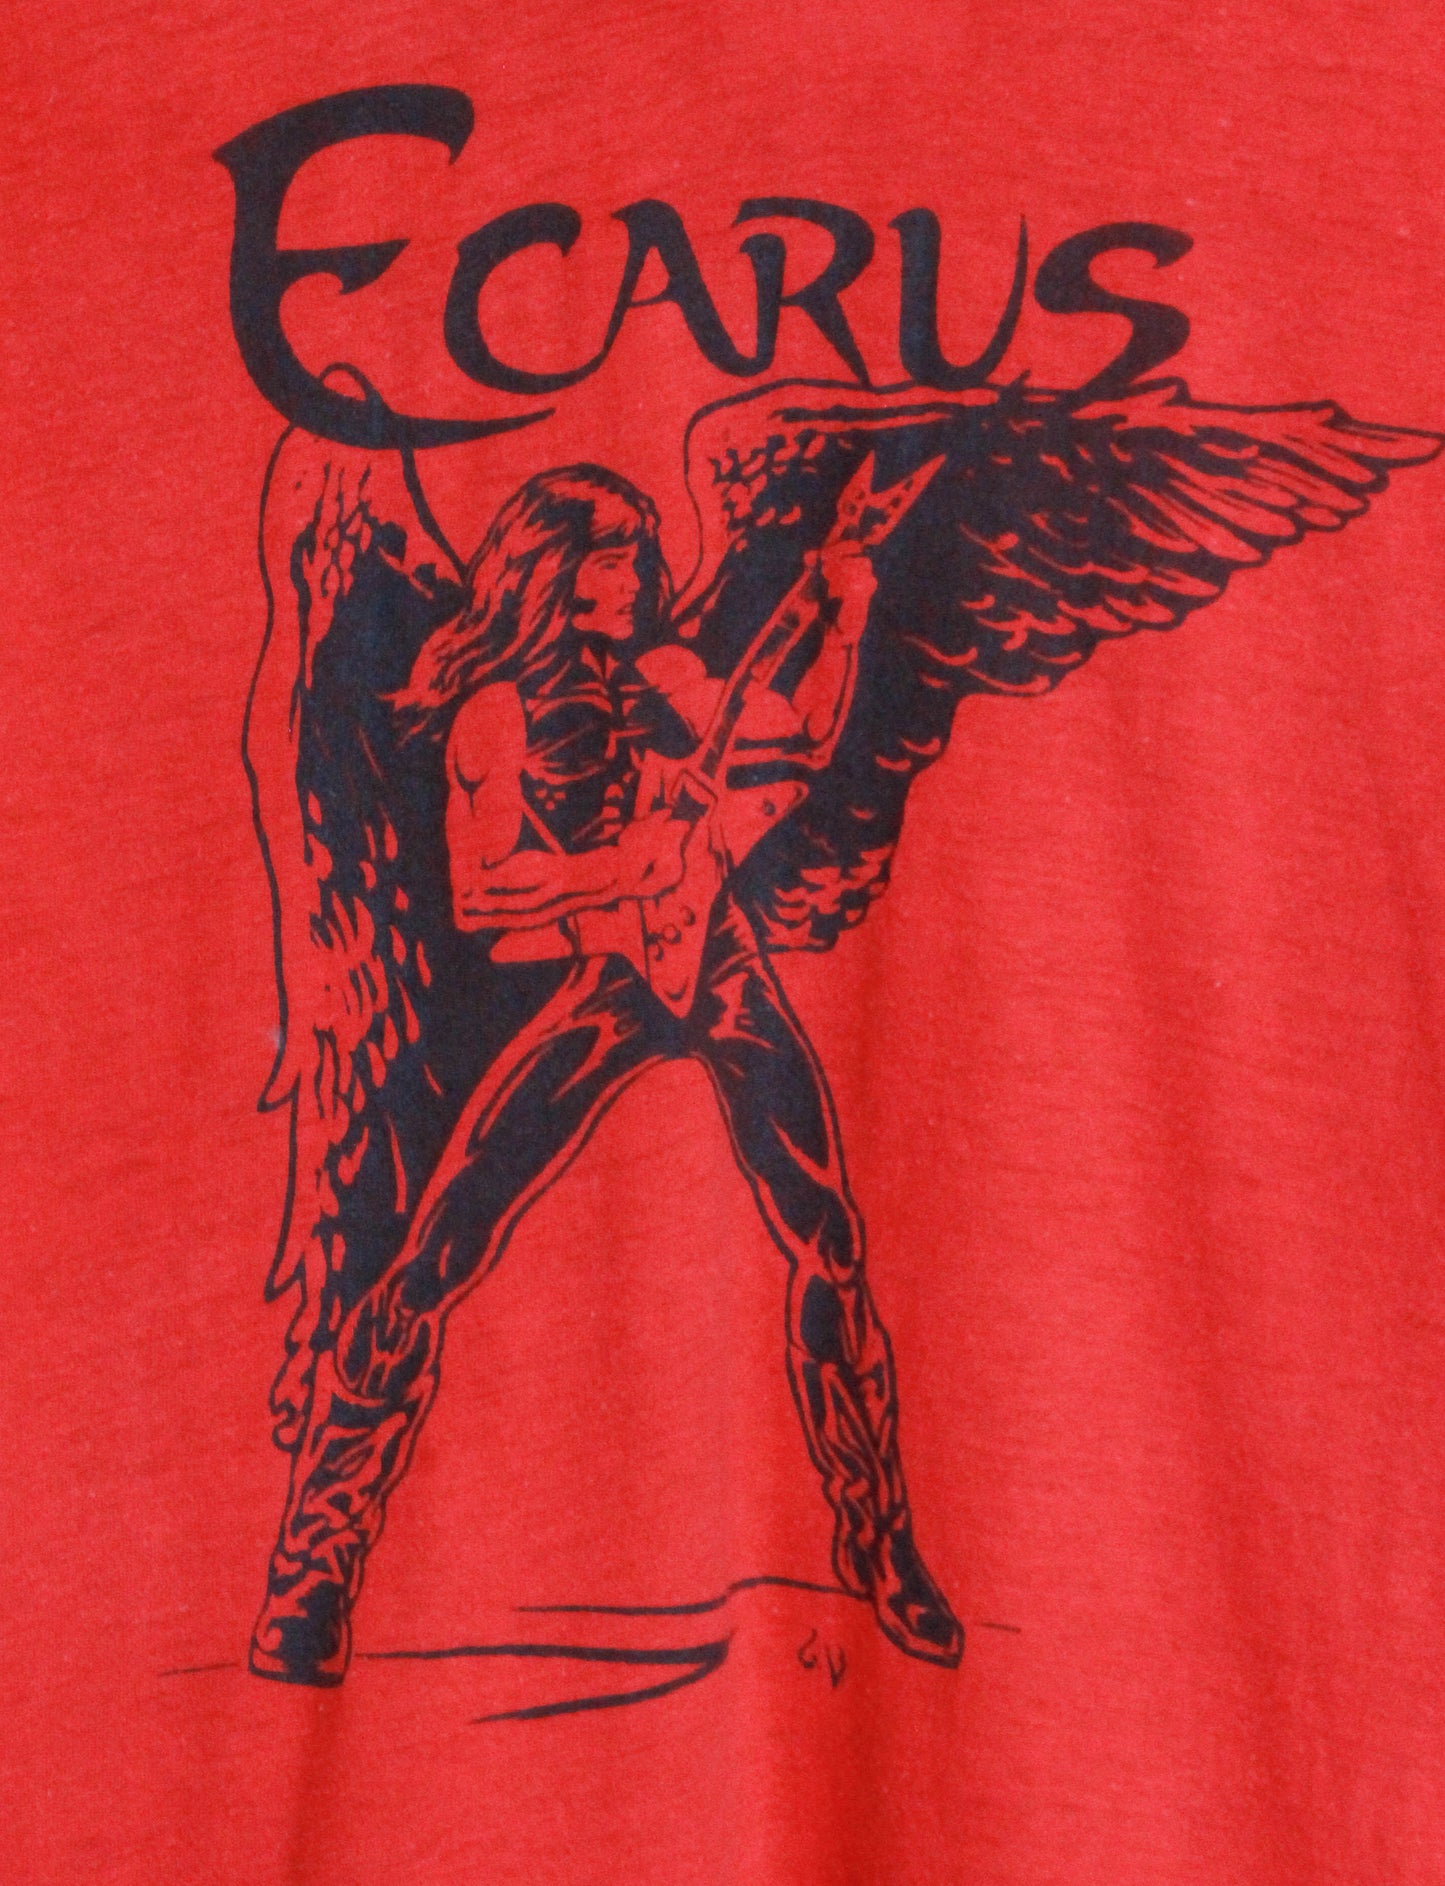 Vintage Ecarus Concert T Shirt Unisex Medium